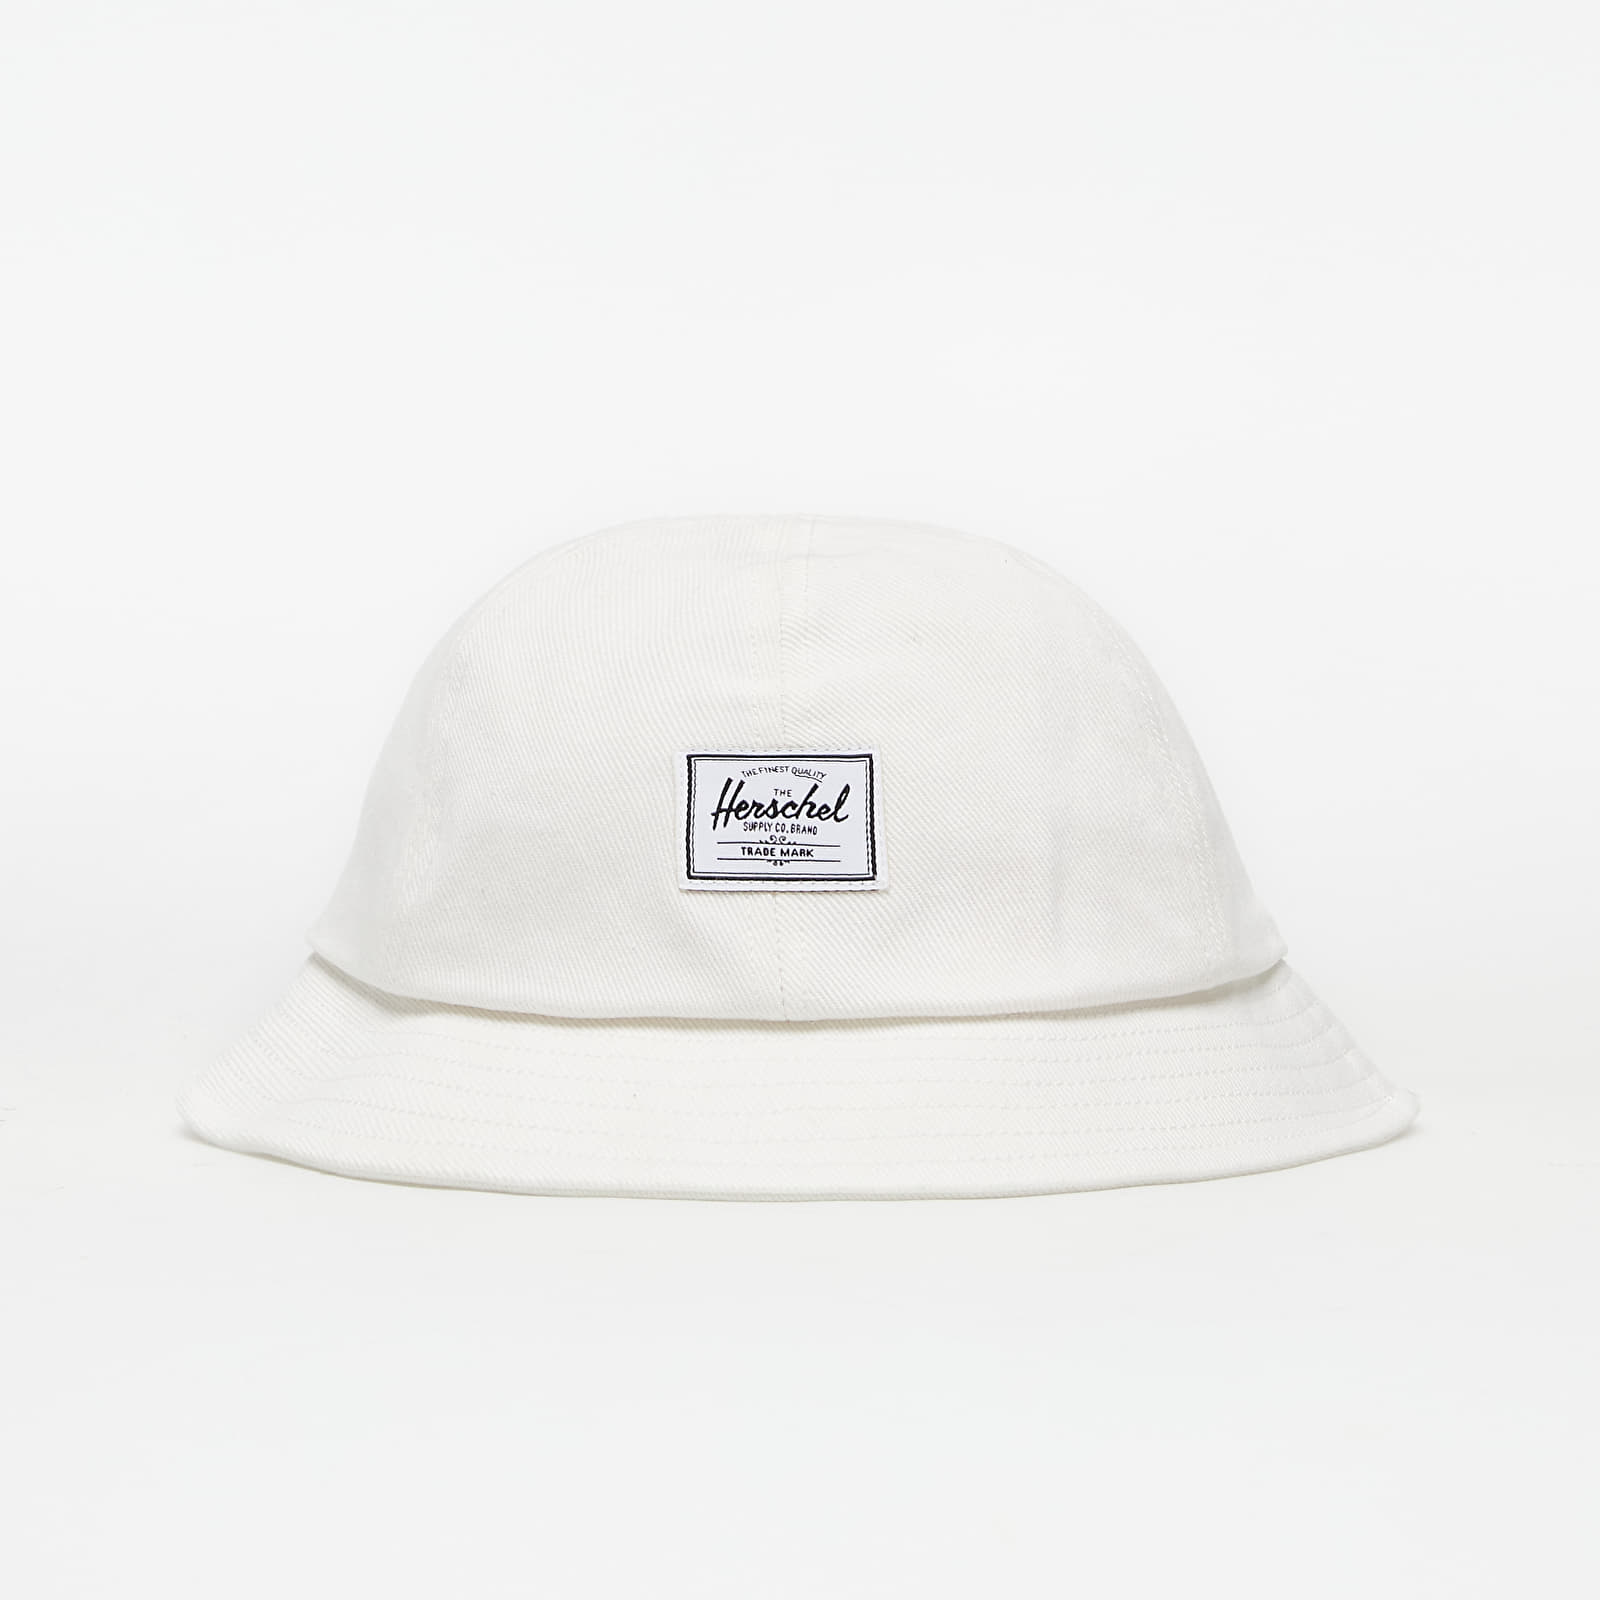 Klobúky Herschel Supply Henderson Hat Blanc De Blanc Denim